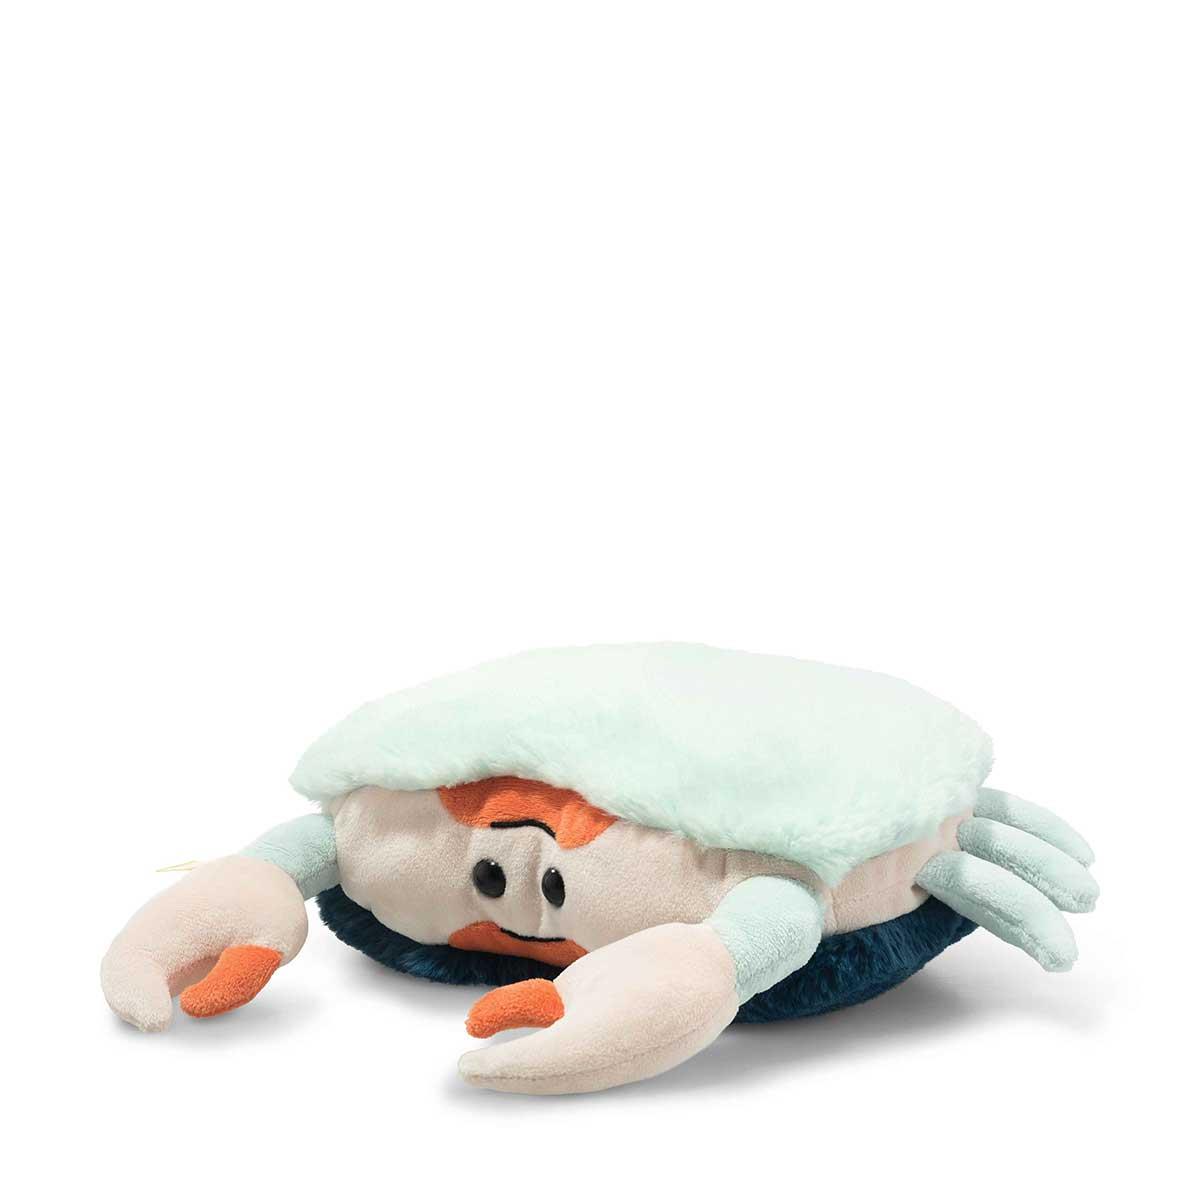 Steiff Soft & Cuddly Friends Curby the Crab Soft Toy - 22 cm